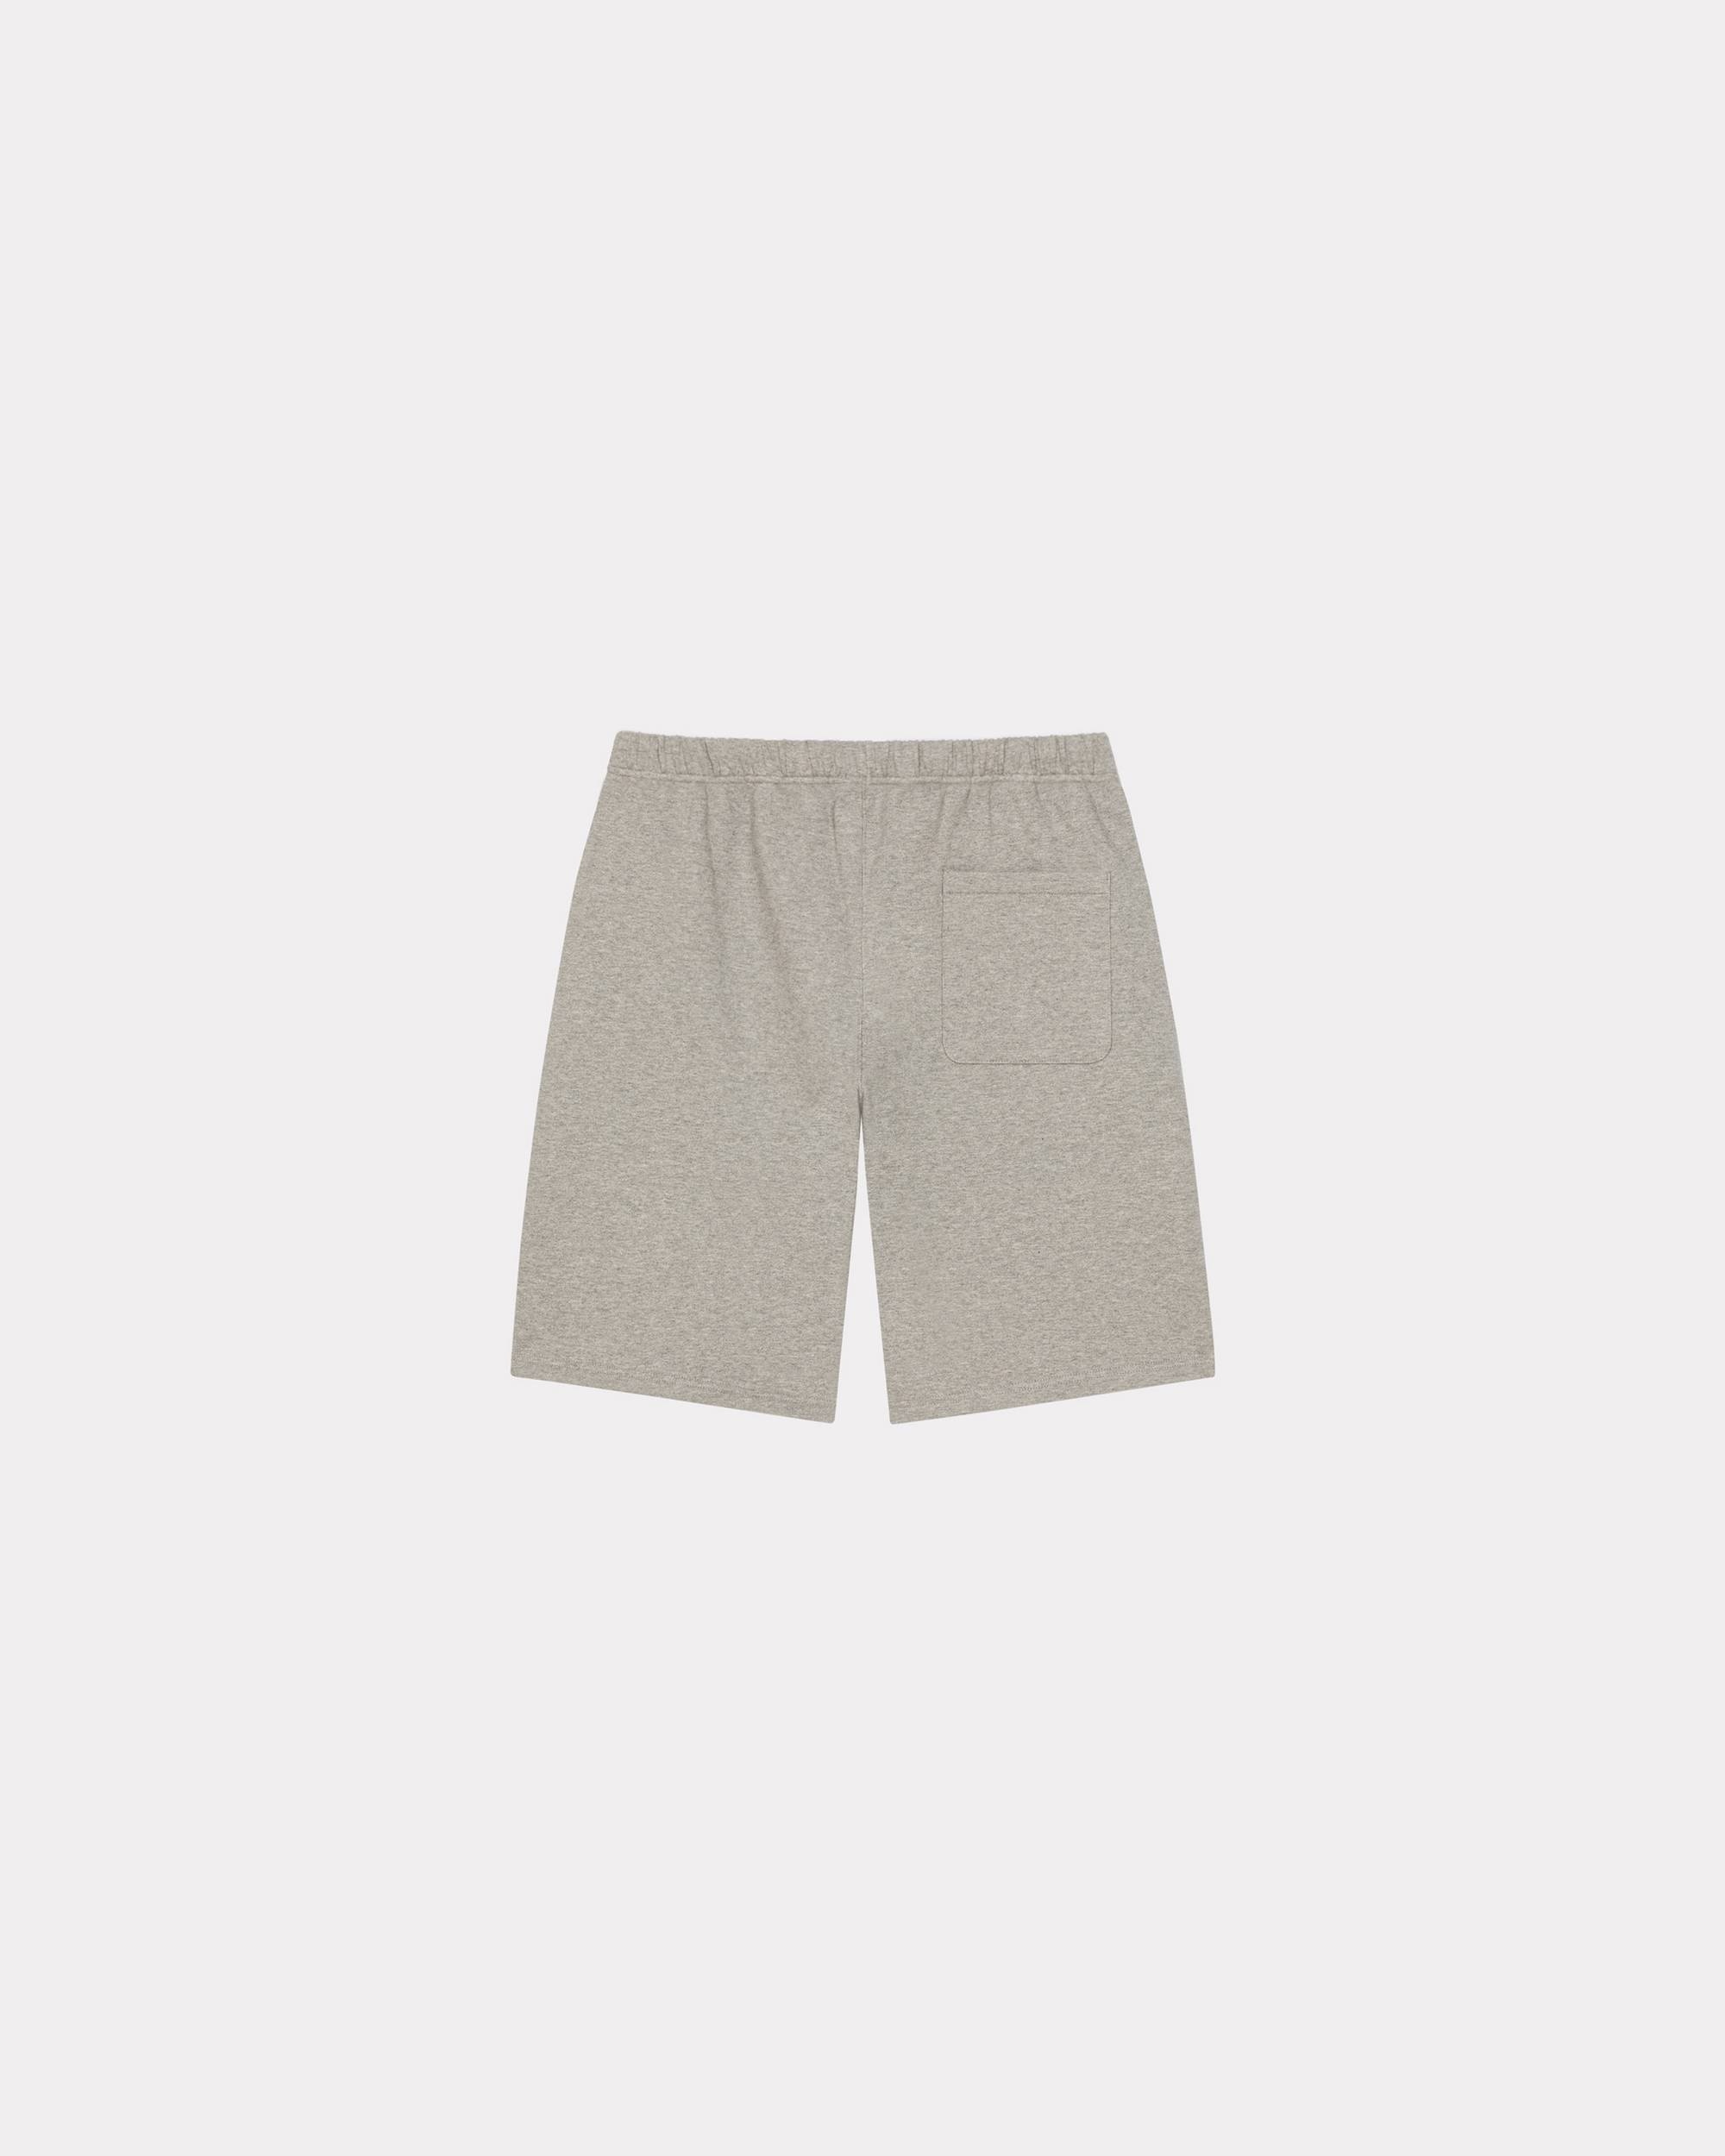 KENZO Paris shorts - 2